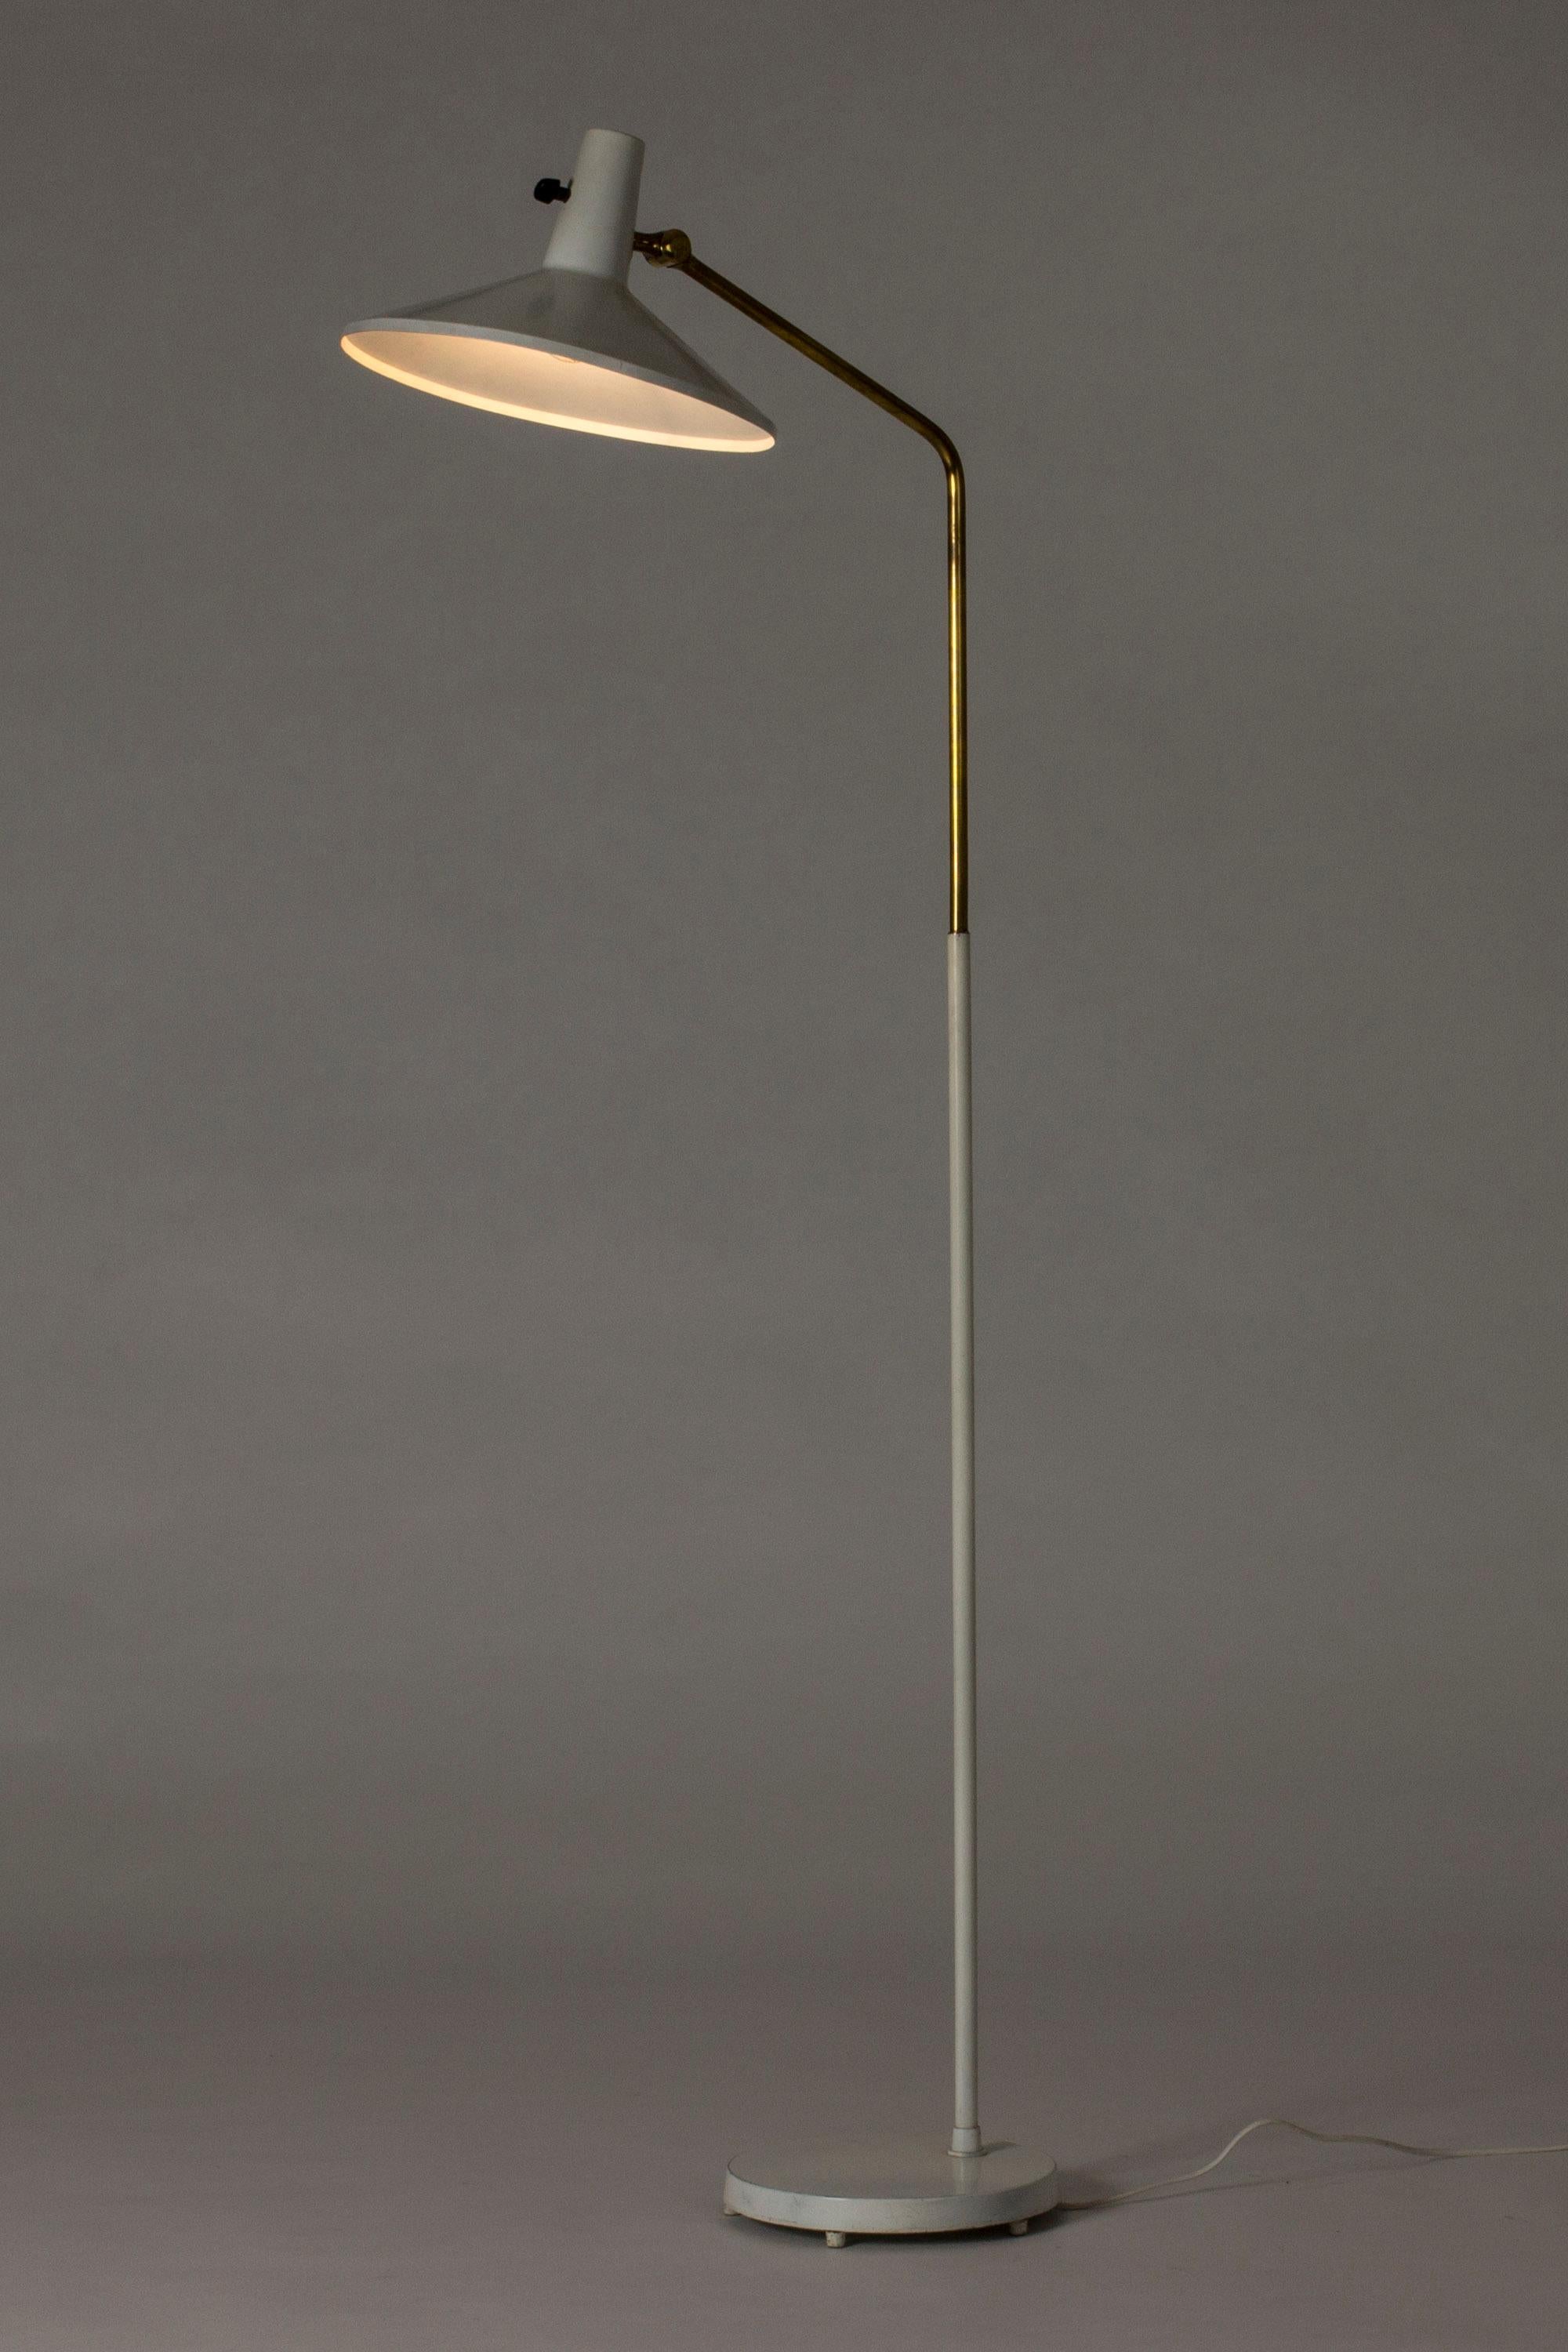 Stehleuchte aus weiß lackiertem Metall und Messing mit einer kantigen Silhouette von Bertil Brisborg, entworfen für die Beleuchtungsabteilung des Kaufhauses NK.